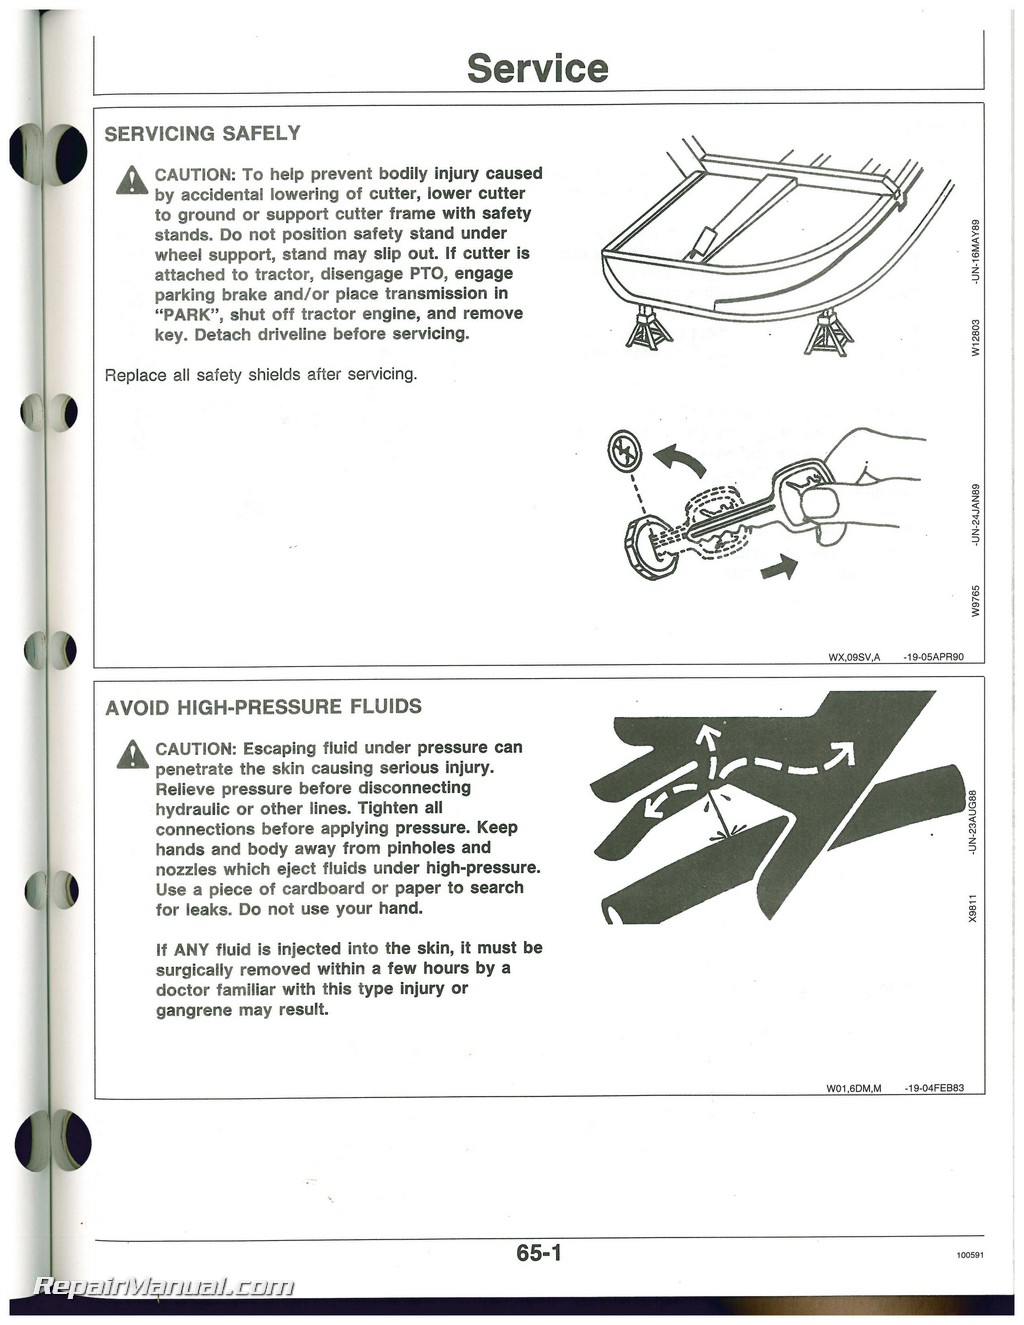 brush cutter service manual